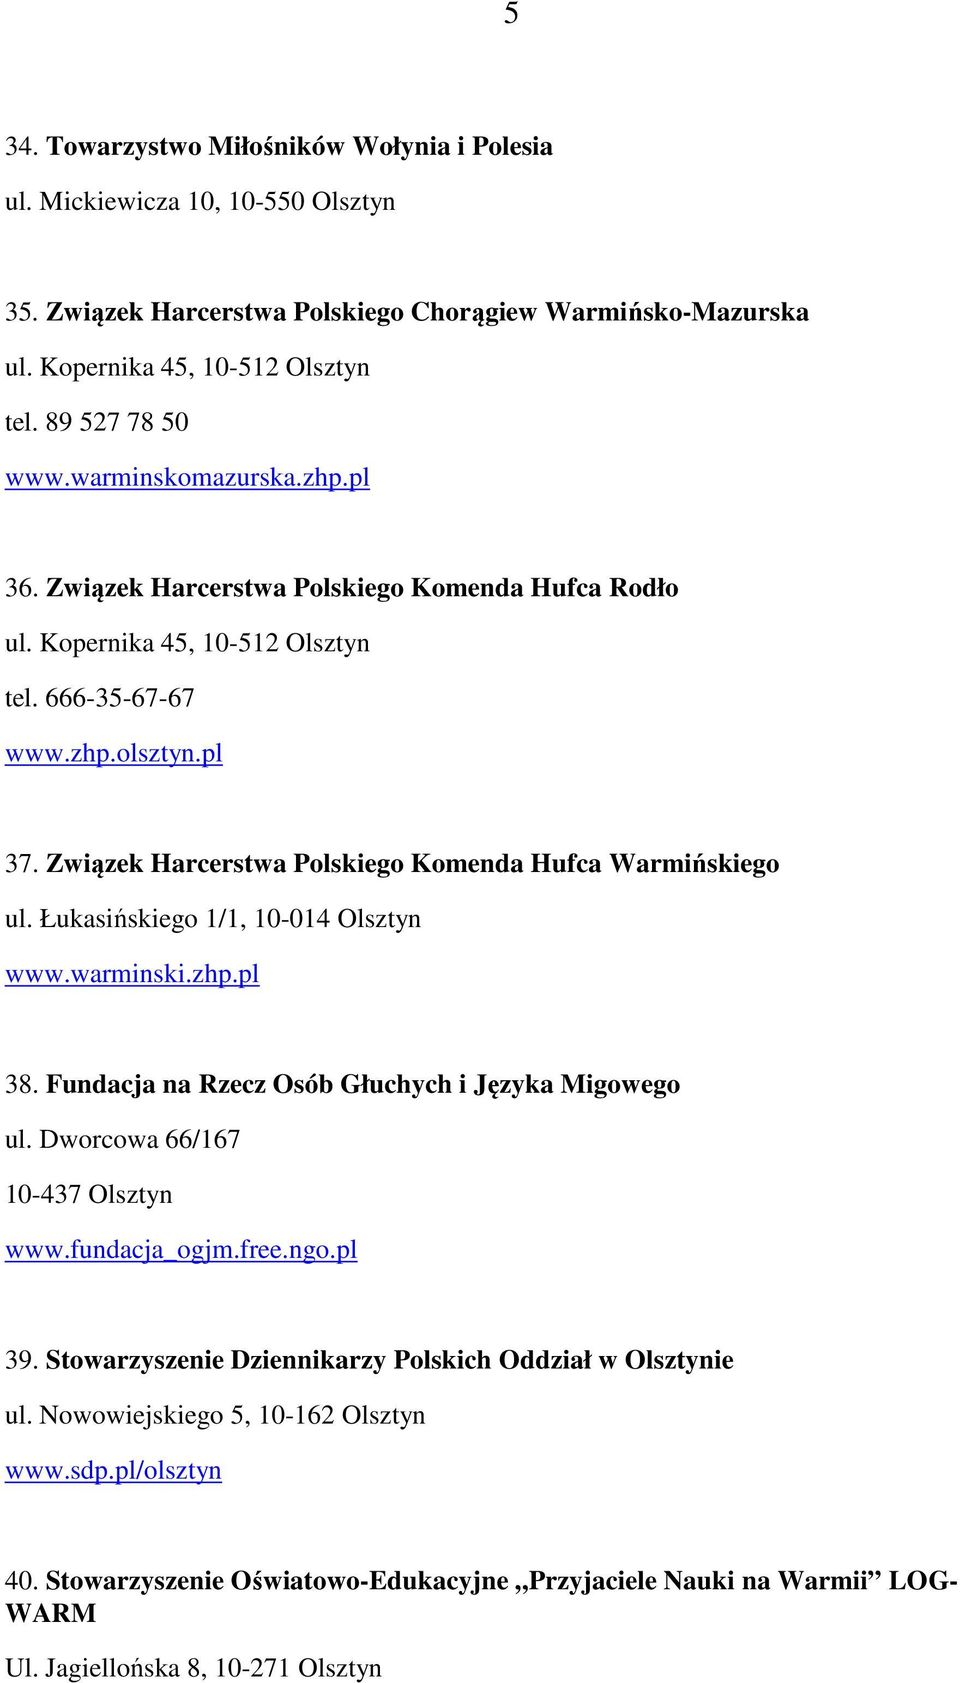 Związek Harcerstwa Polskiego Komenda Hufca Warmińskiego ul. Łukasińskiego 1/1, 10-014 Olsztyn www.warminski.zhp.pl 38. Fundacja na Rzecz Osób Głuchych i Języka Migowego ul.